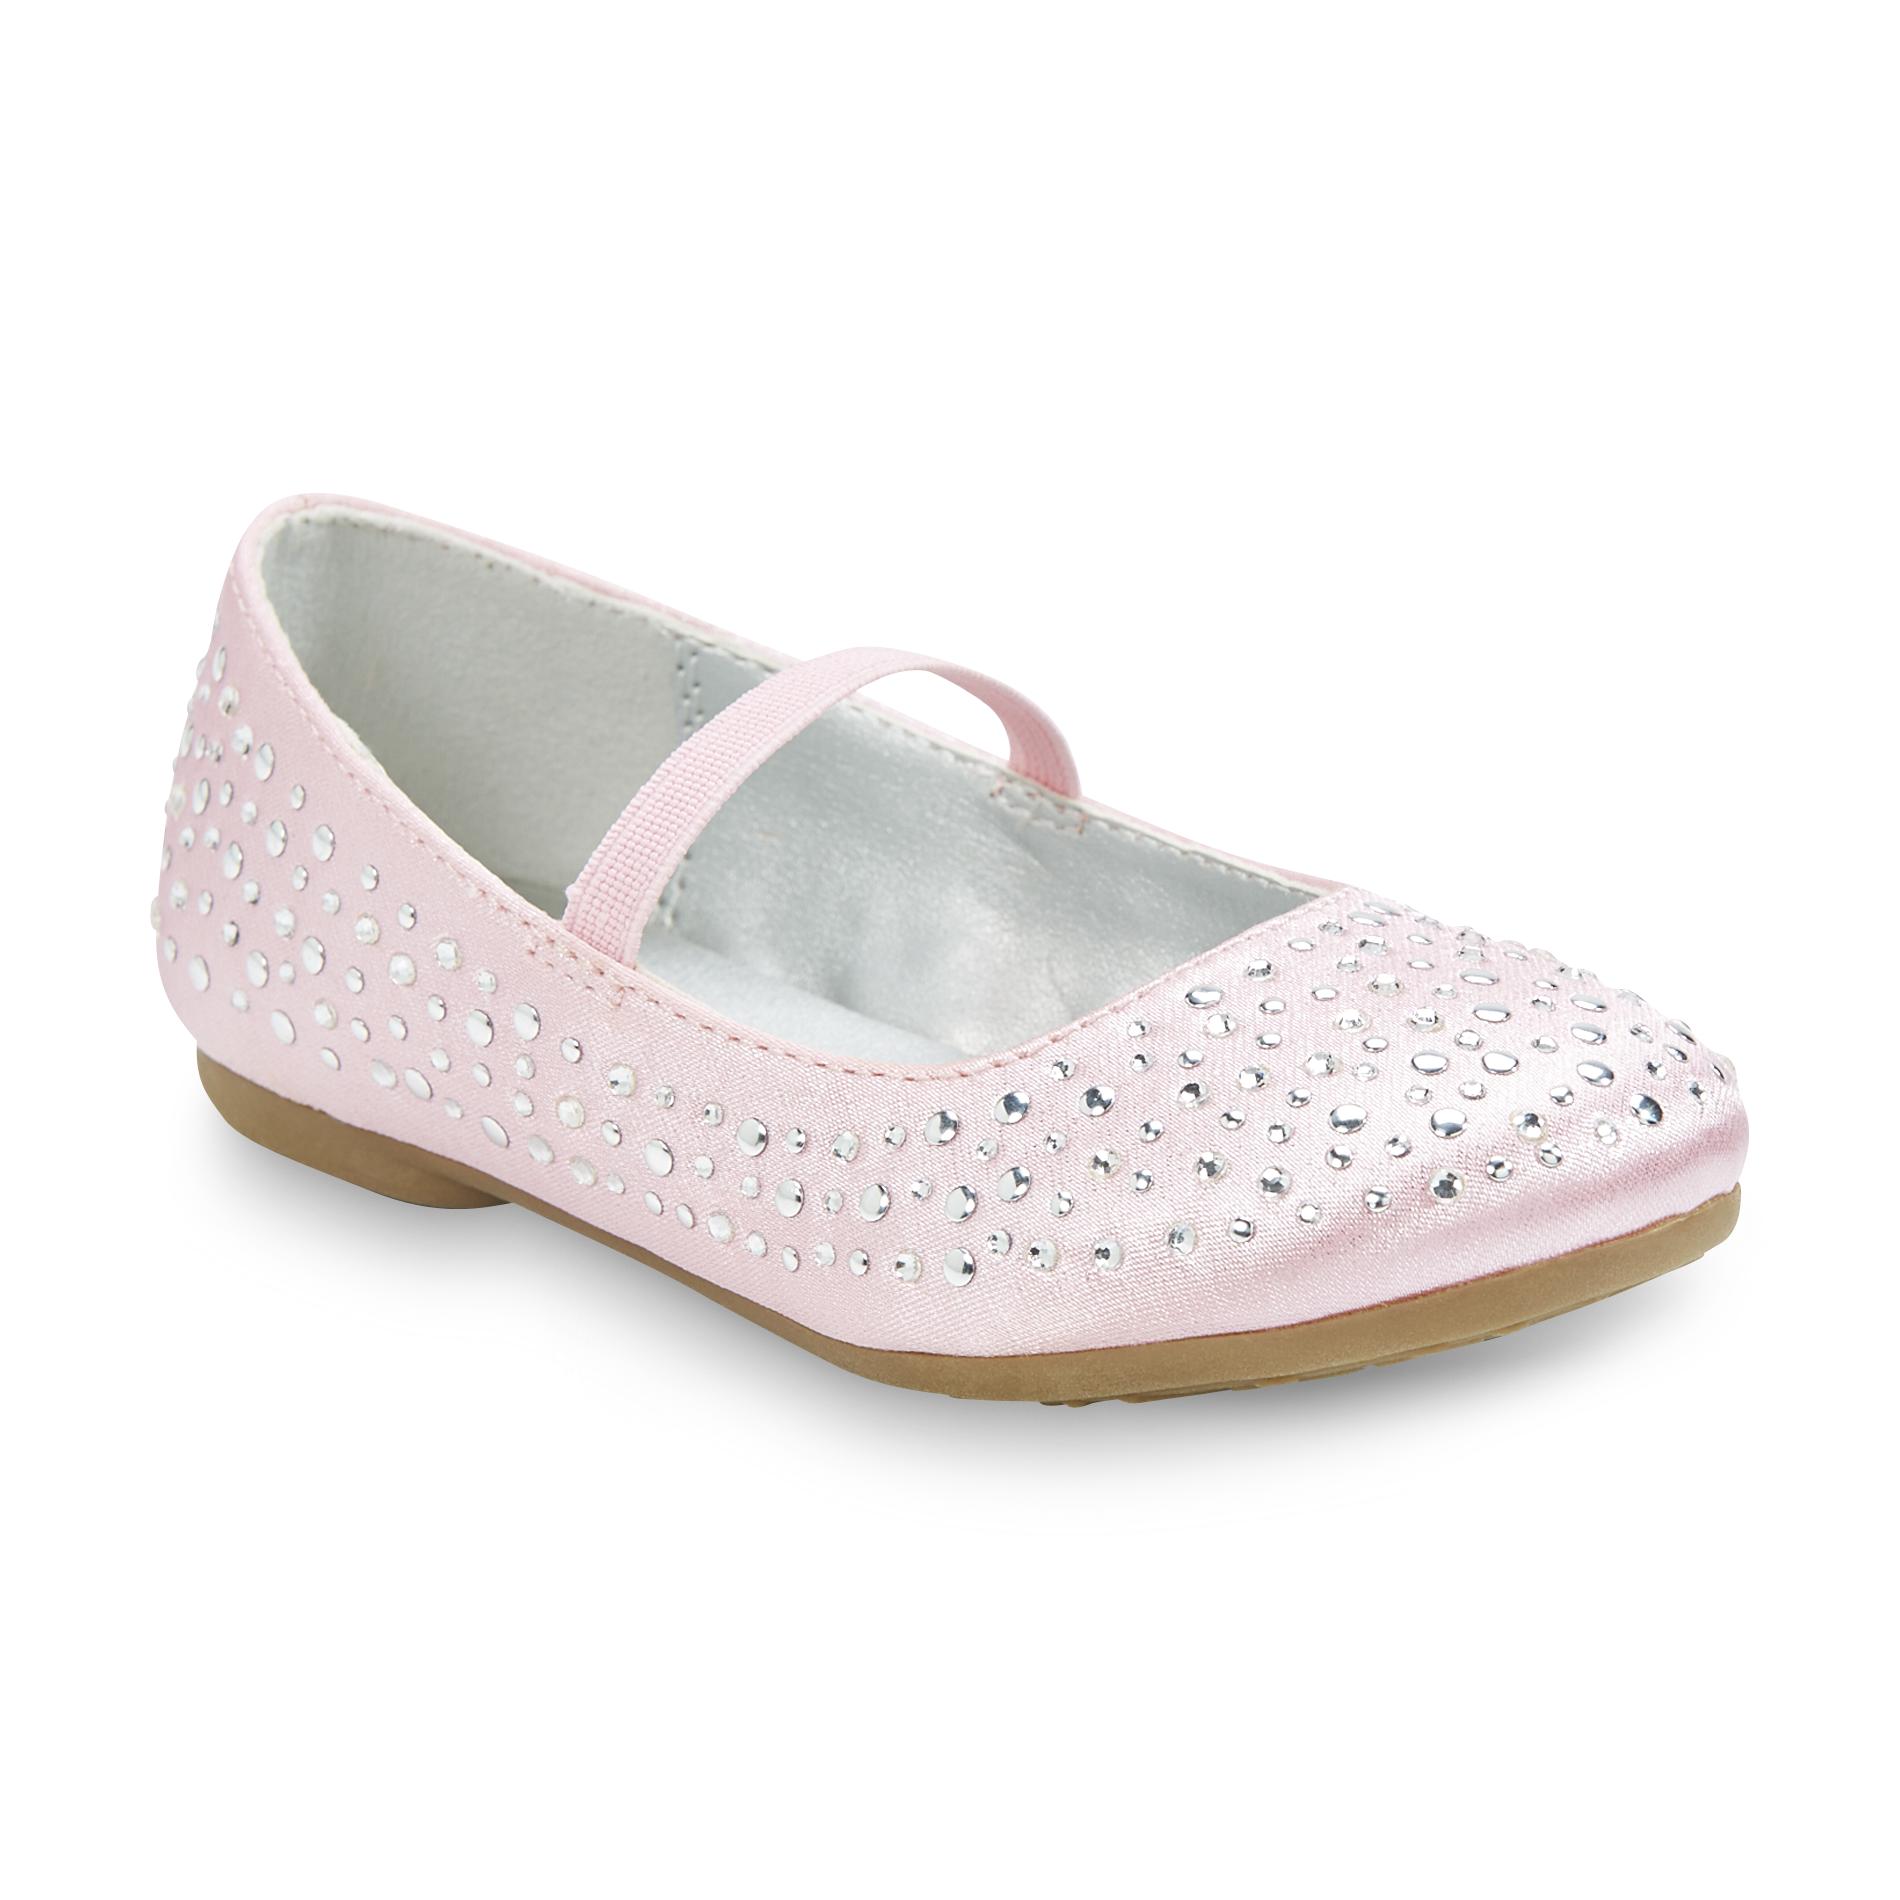 Mia Toddler Girls Crystal Pink Embellished Satin Shoe